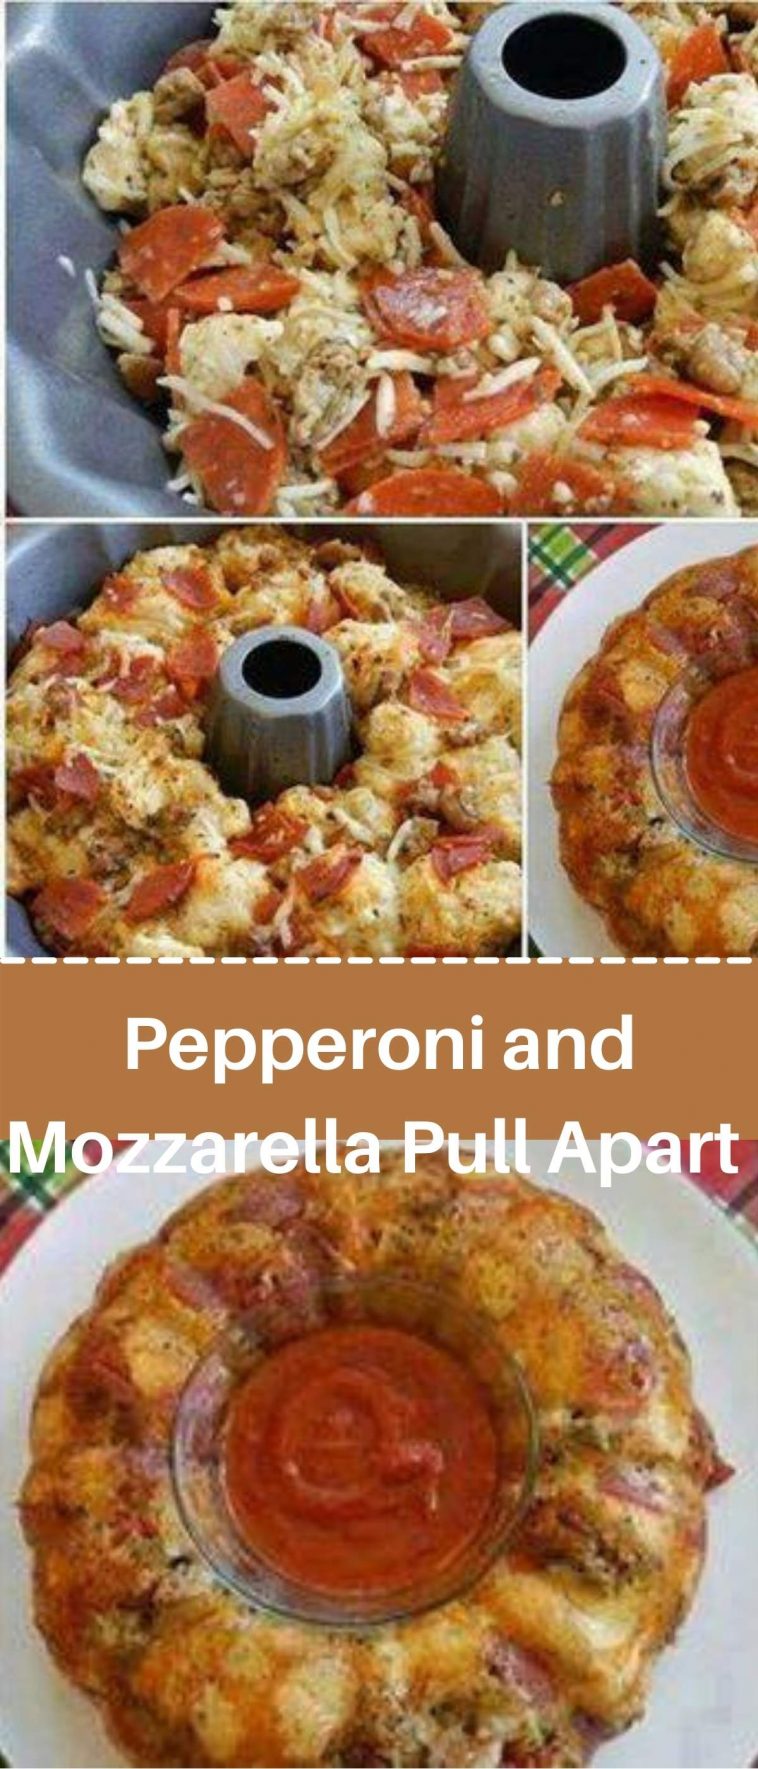 Pepperoni and Mozzarella Pull Apart Bread